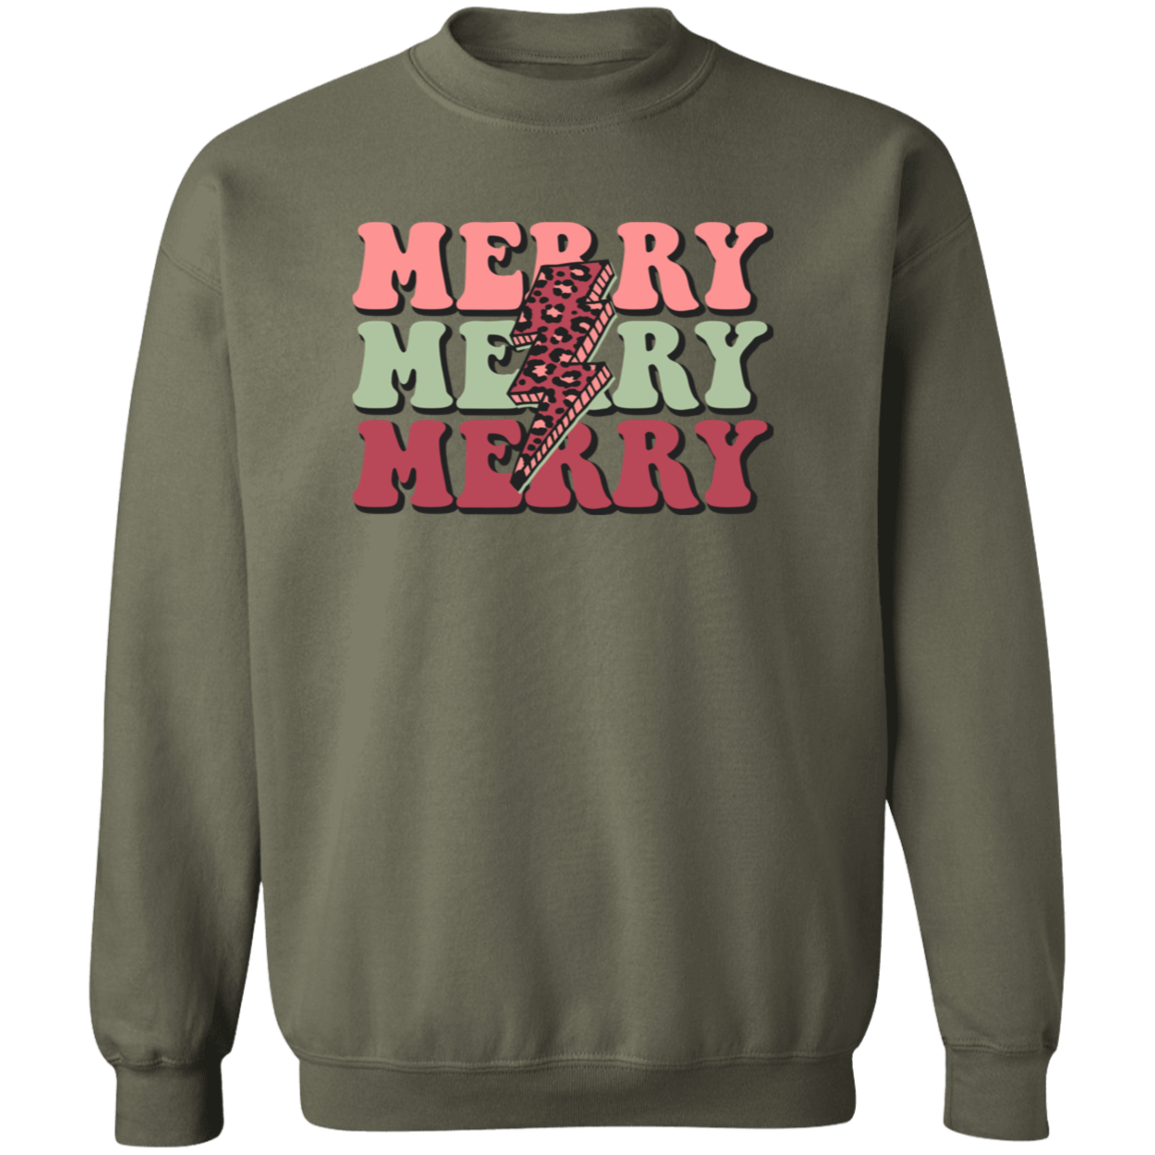 Merry Merry Merry Sweatshirt